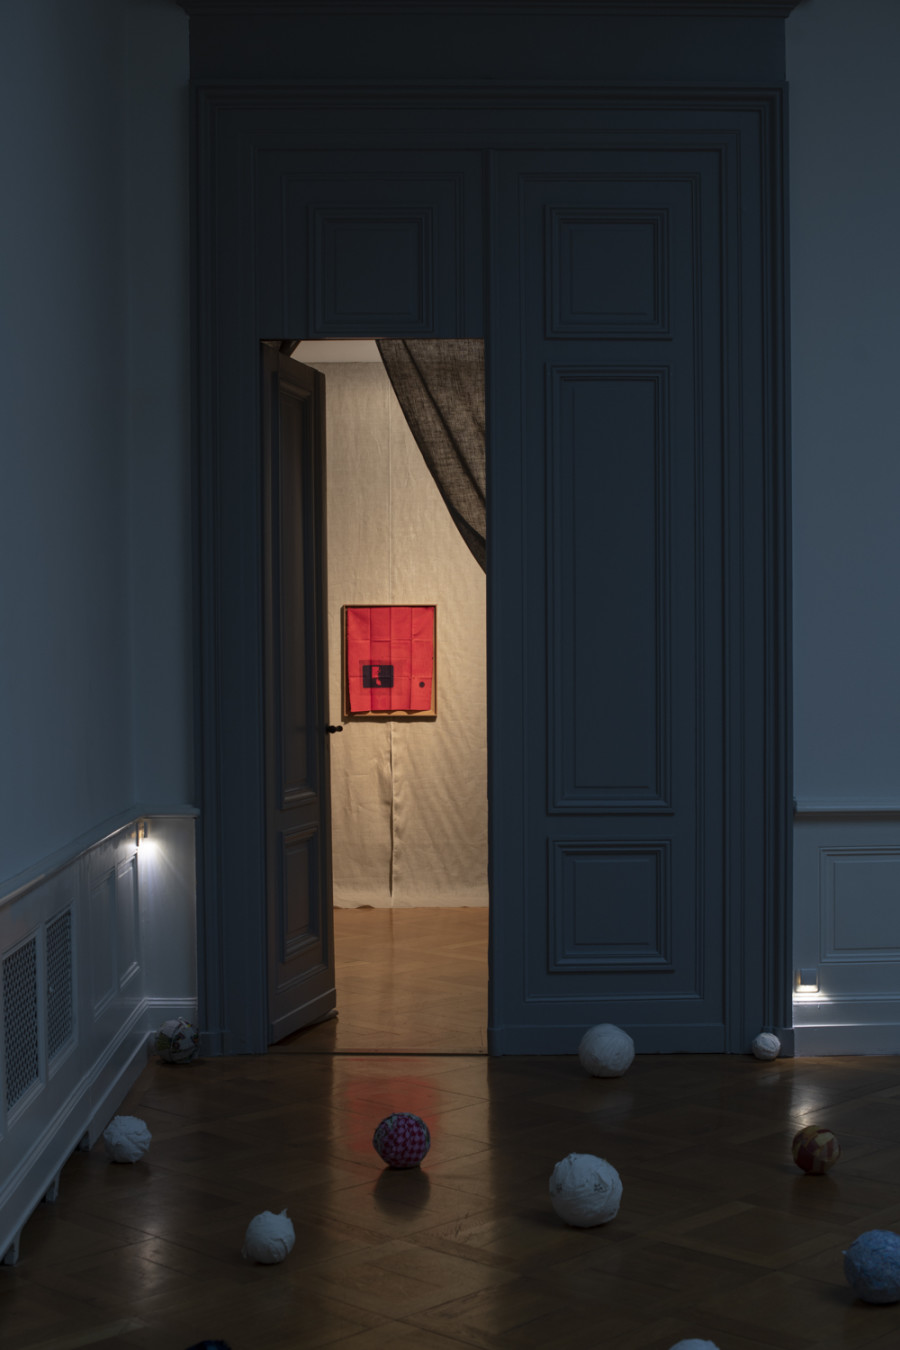 Exhibition view, Axelle Stiefel, Fantasma, Palais de l'Athénée salle Crosnier, 2022. Photo: Société des Arts/Greg clément